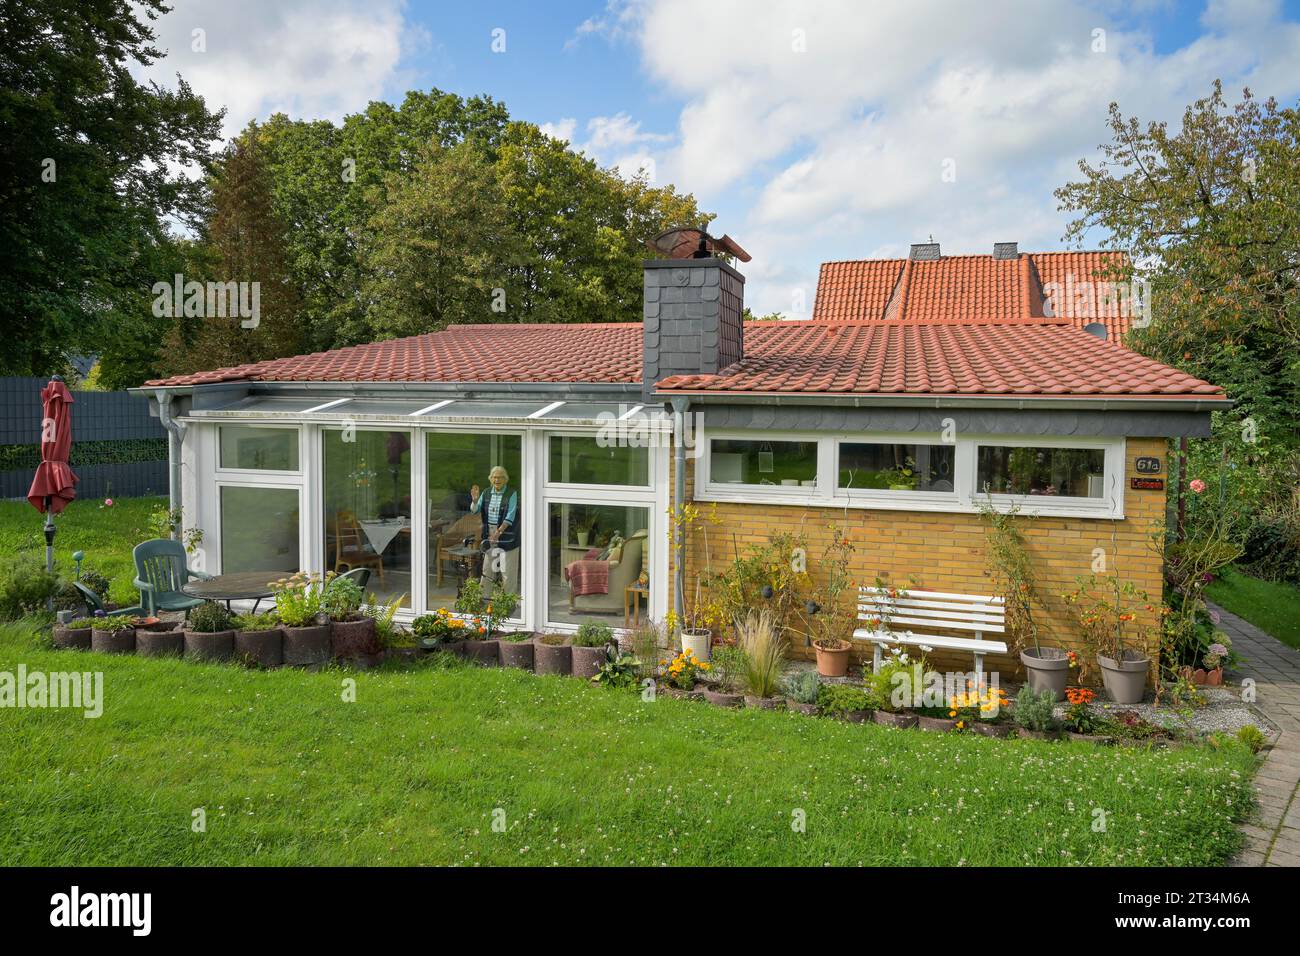 Einfamilienhaus einer Rentnerin mit Garten, Deutschland Stock Photo